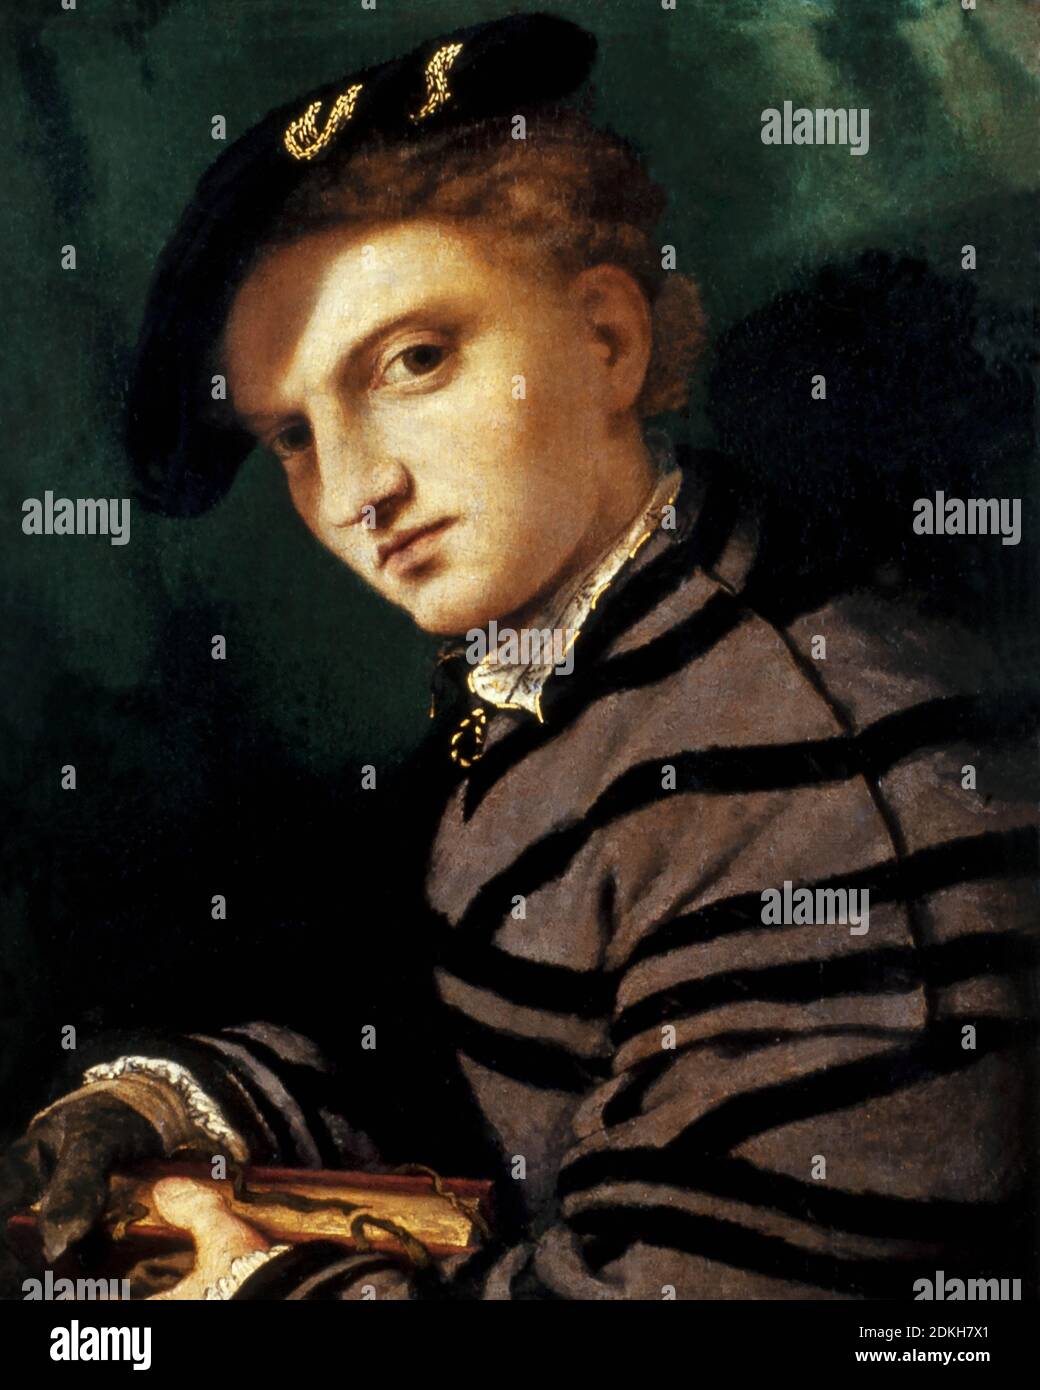 Rinascimento italiano Lorenzo Lotto 1480 – 1556/1557. Ritratto di un giovane. Circa 1526. Dipinto ad olio su legno. 34.5 x 27.5. Foto Stock